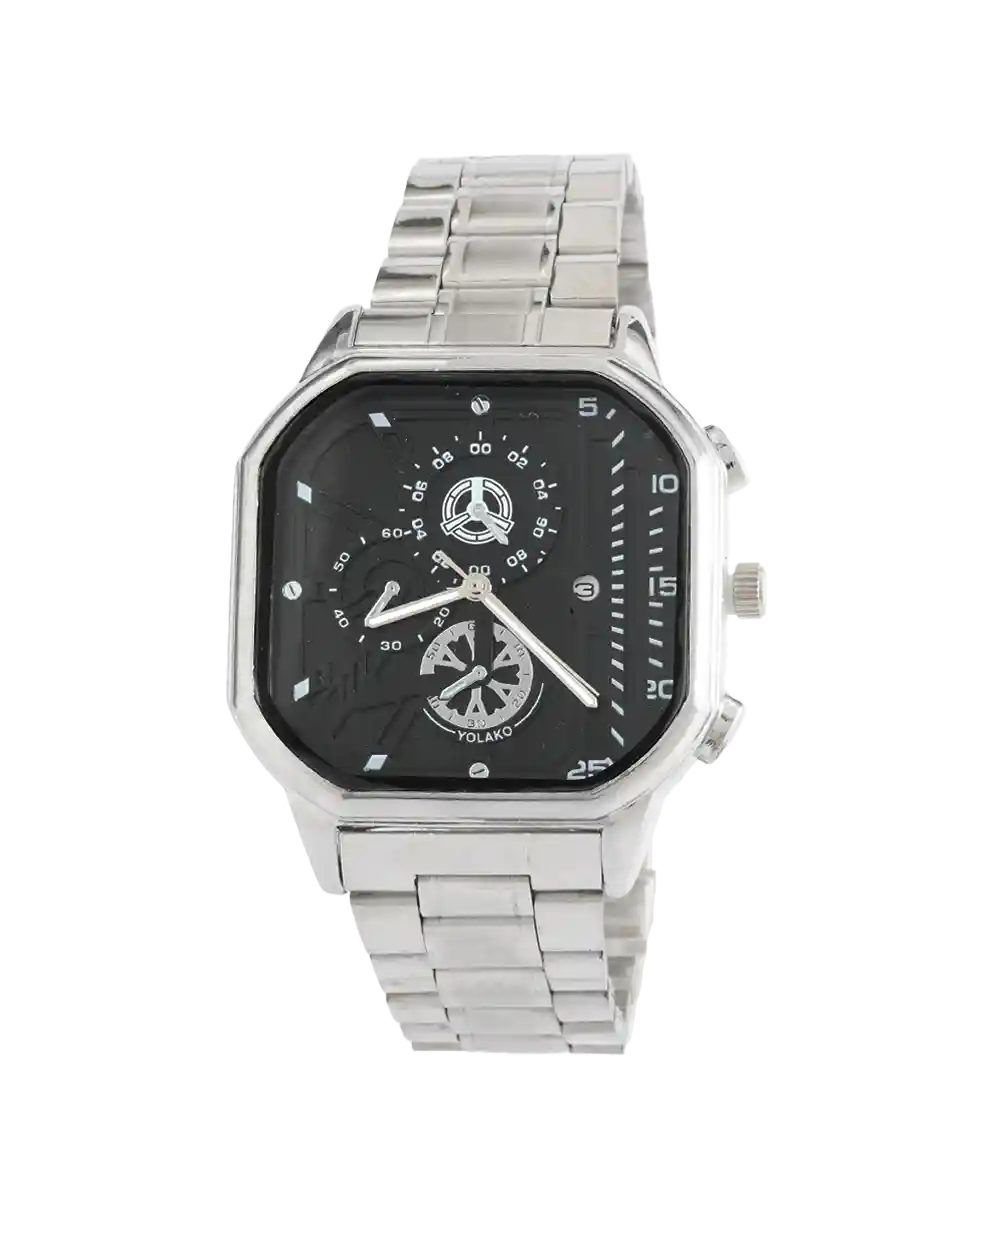 خرید ساعت مچی مردانه جینوا GENEVA مدل 2092 رنگ نقره ای و صفحه مشکی رنگ ثابت بهترین قیمت به همراه ارسال رایگان و جعبه ی کادویی